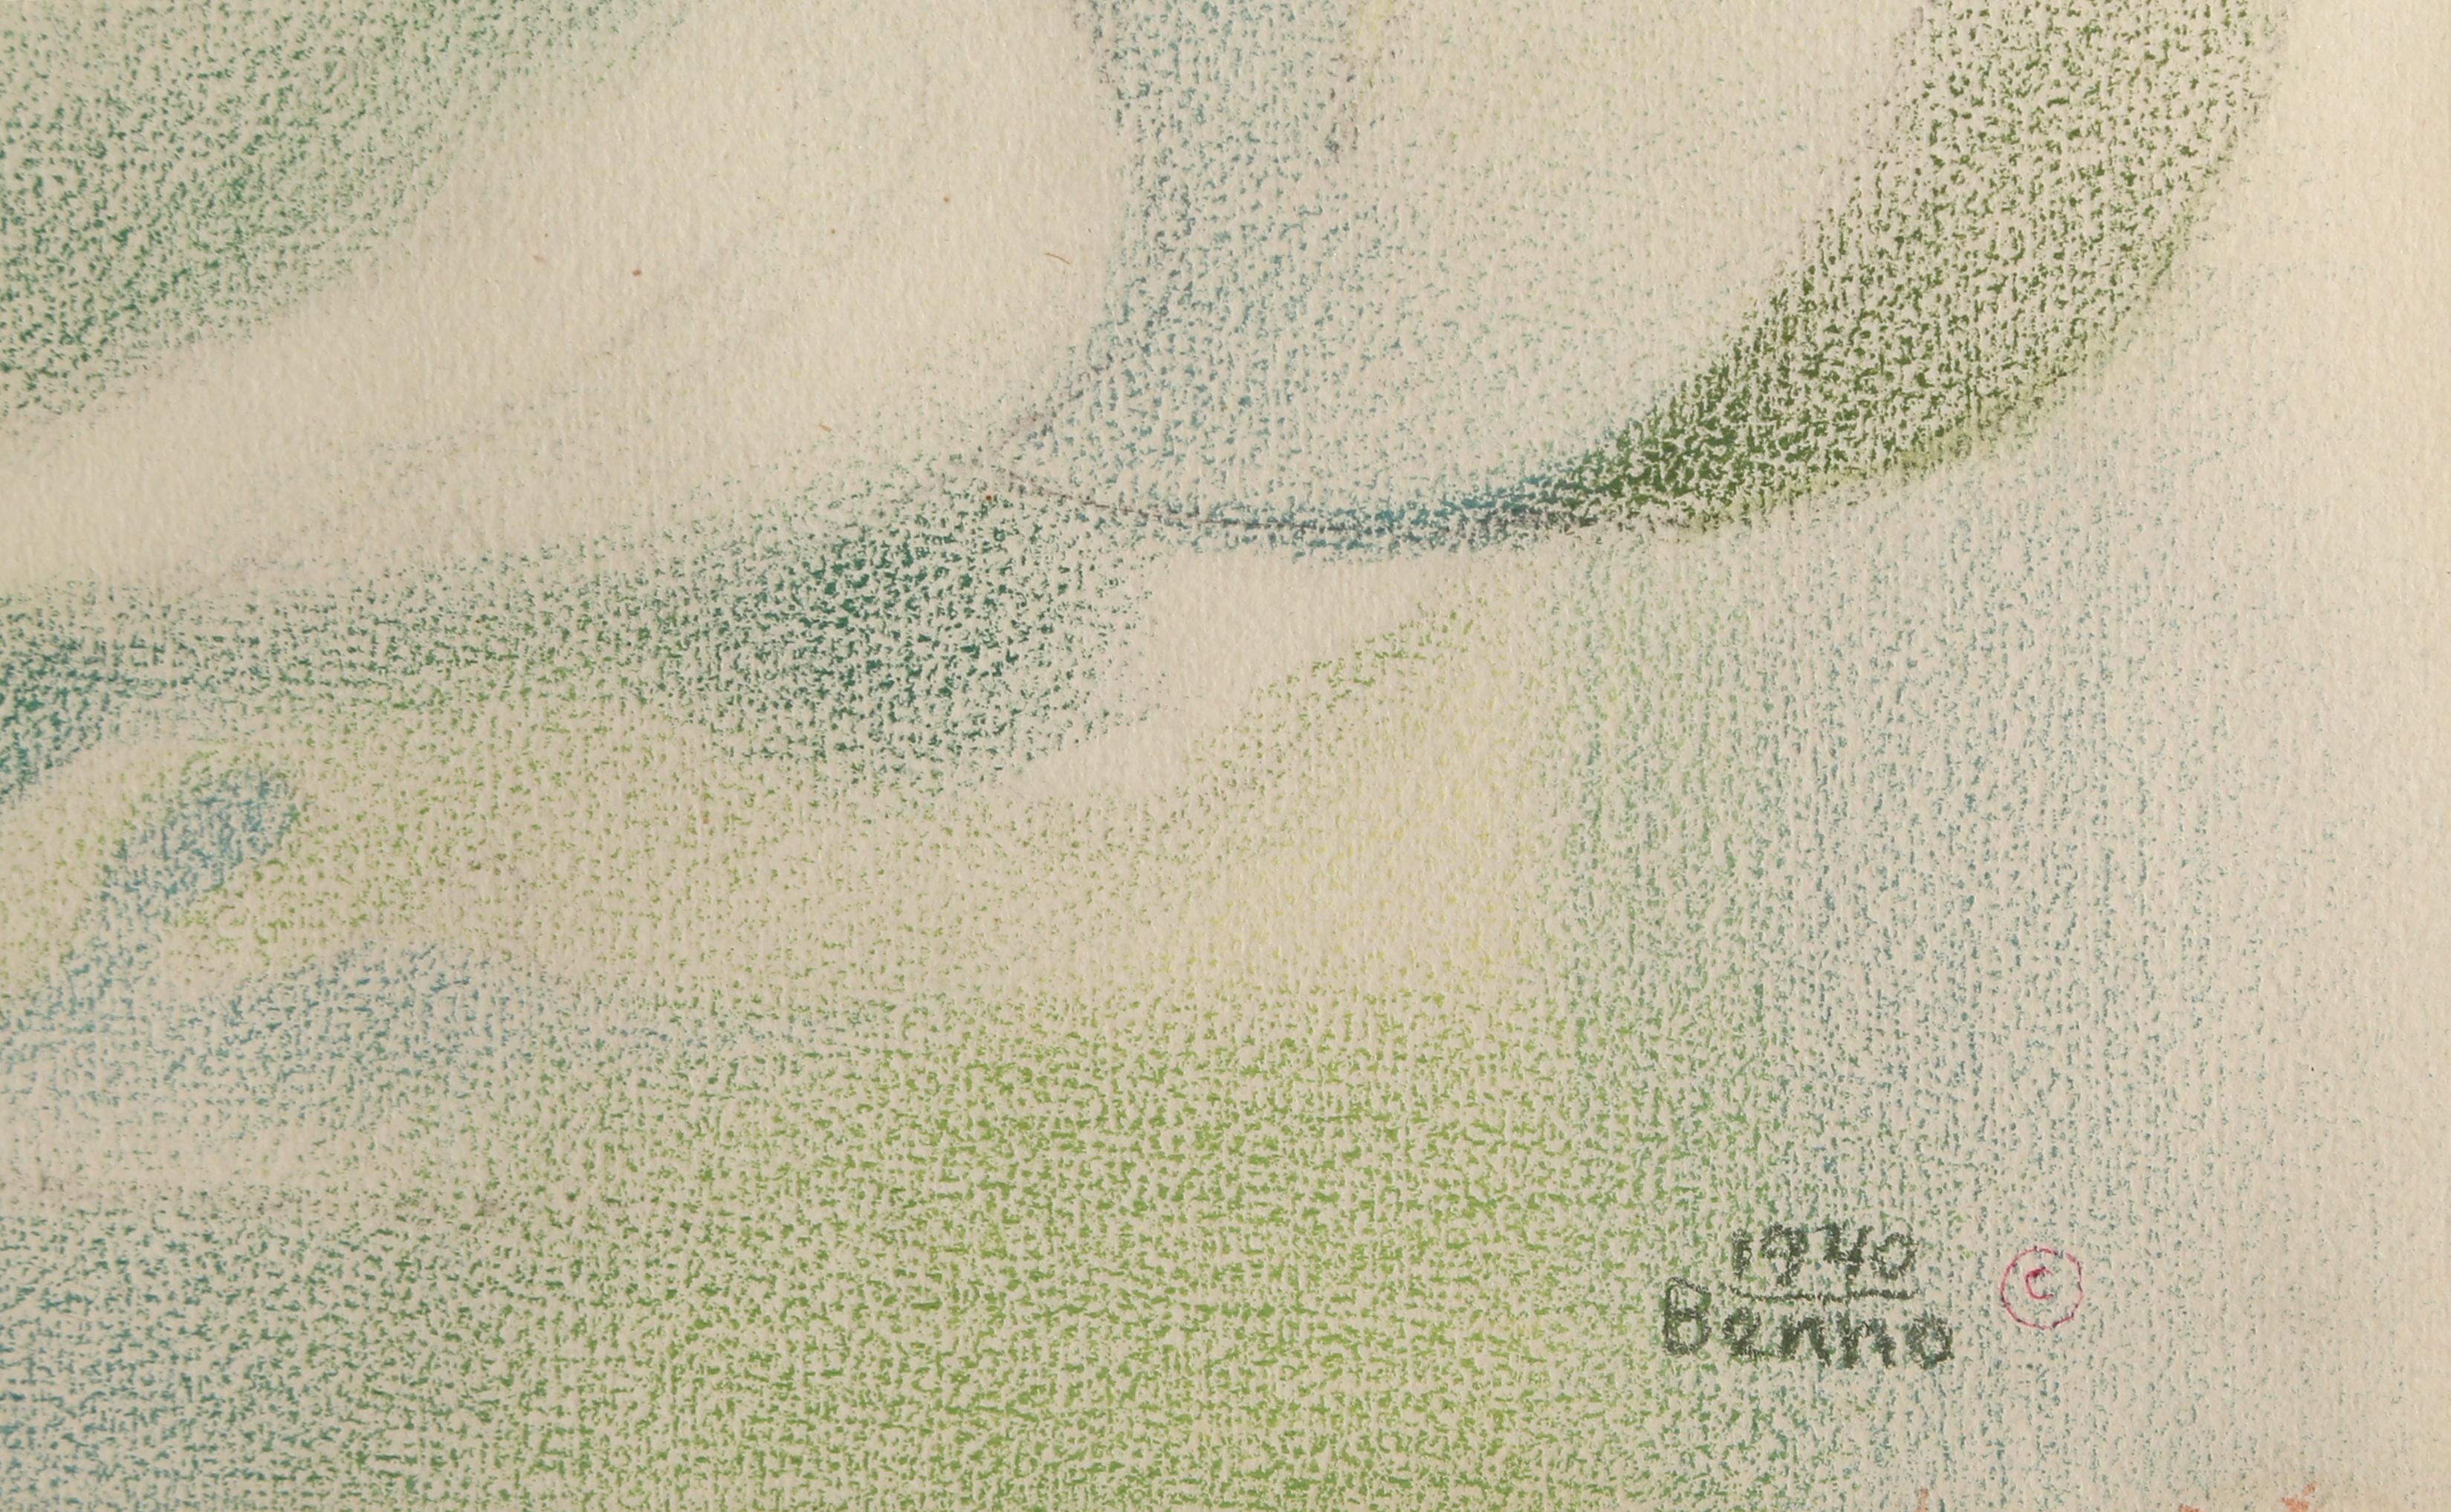 Nature morte avec coupe de fruits et cruche d'eau
Benjamin Benno, Américain (1901-1980)
Date : 1940
Crayon sur papier, signé et daté
Taille : 13 x 17.13 in. (33.02 x 43.5 cm)
Taille du cadre : 24.5 x 28 pouces